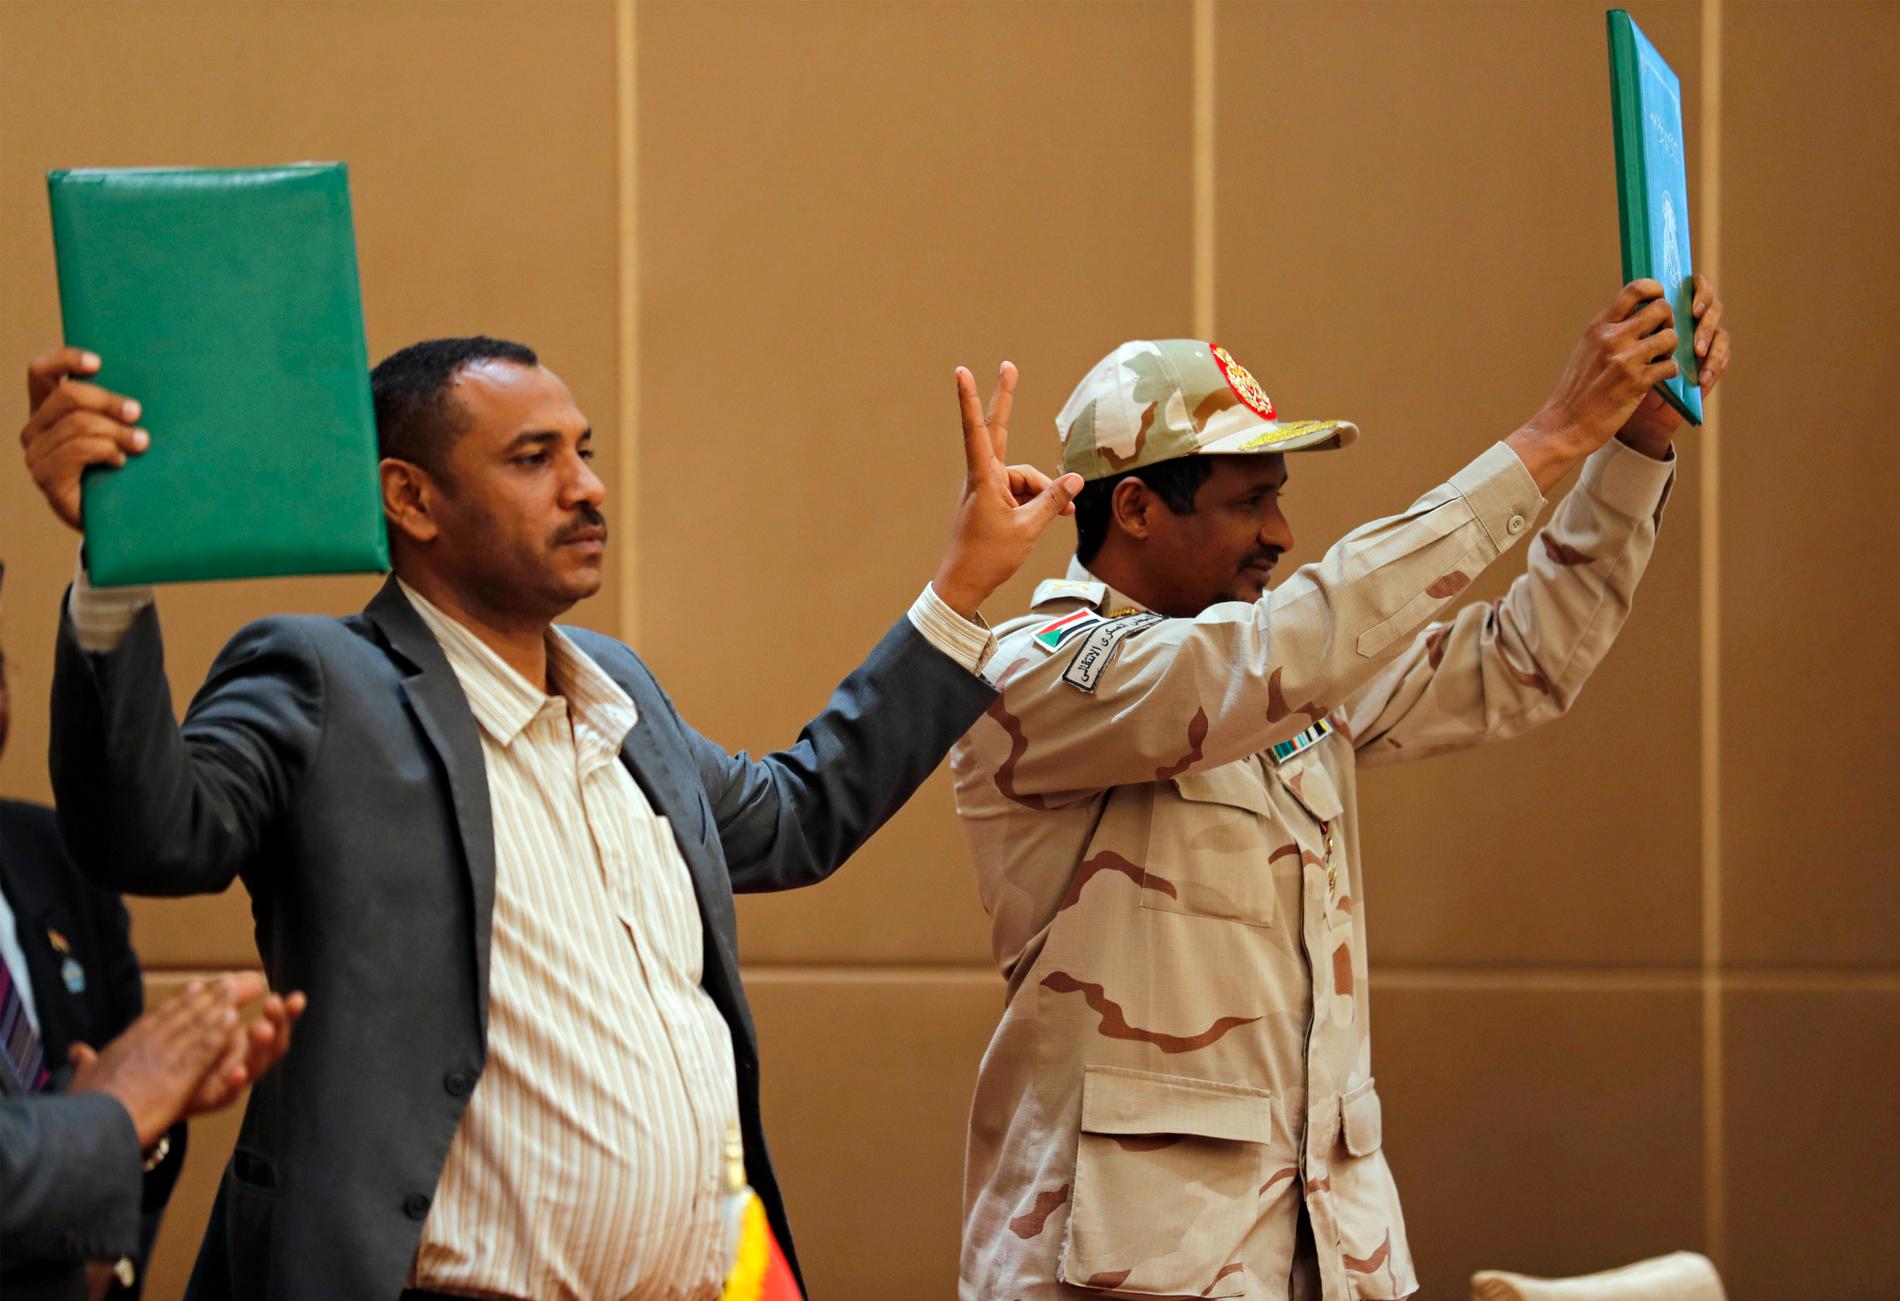 Protestledaren Ahmed Rabie (vänster) och generalen Mohammed Hamdan Dagalo håller upp ett påskrivet avtal om maktdelning i Khartum den 4 augusti förra året.